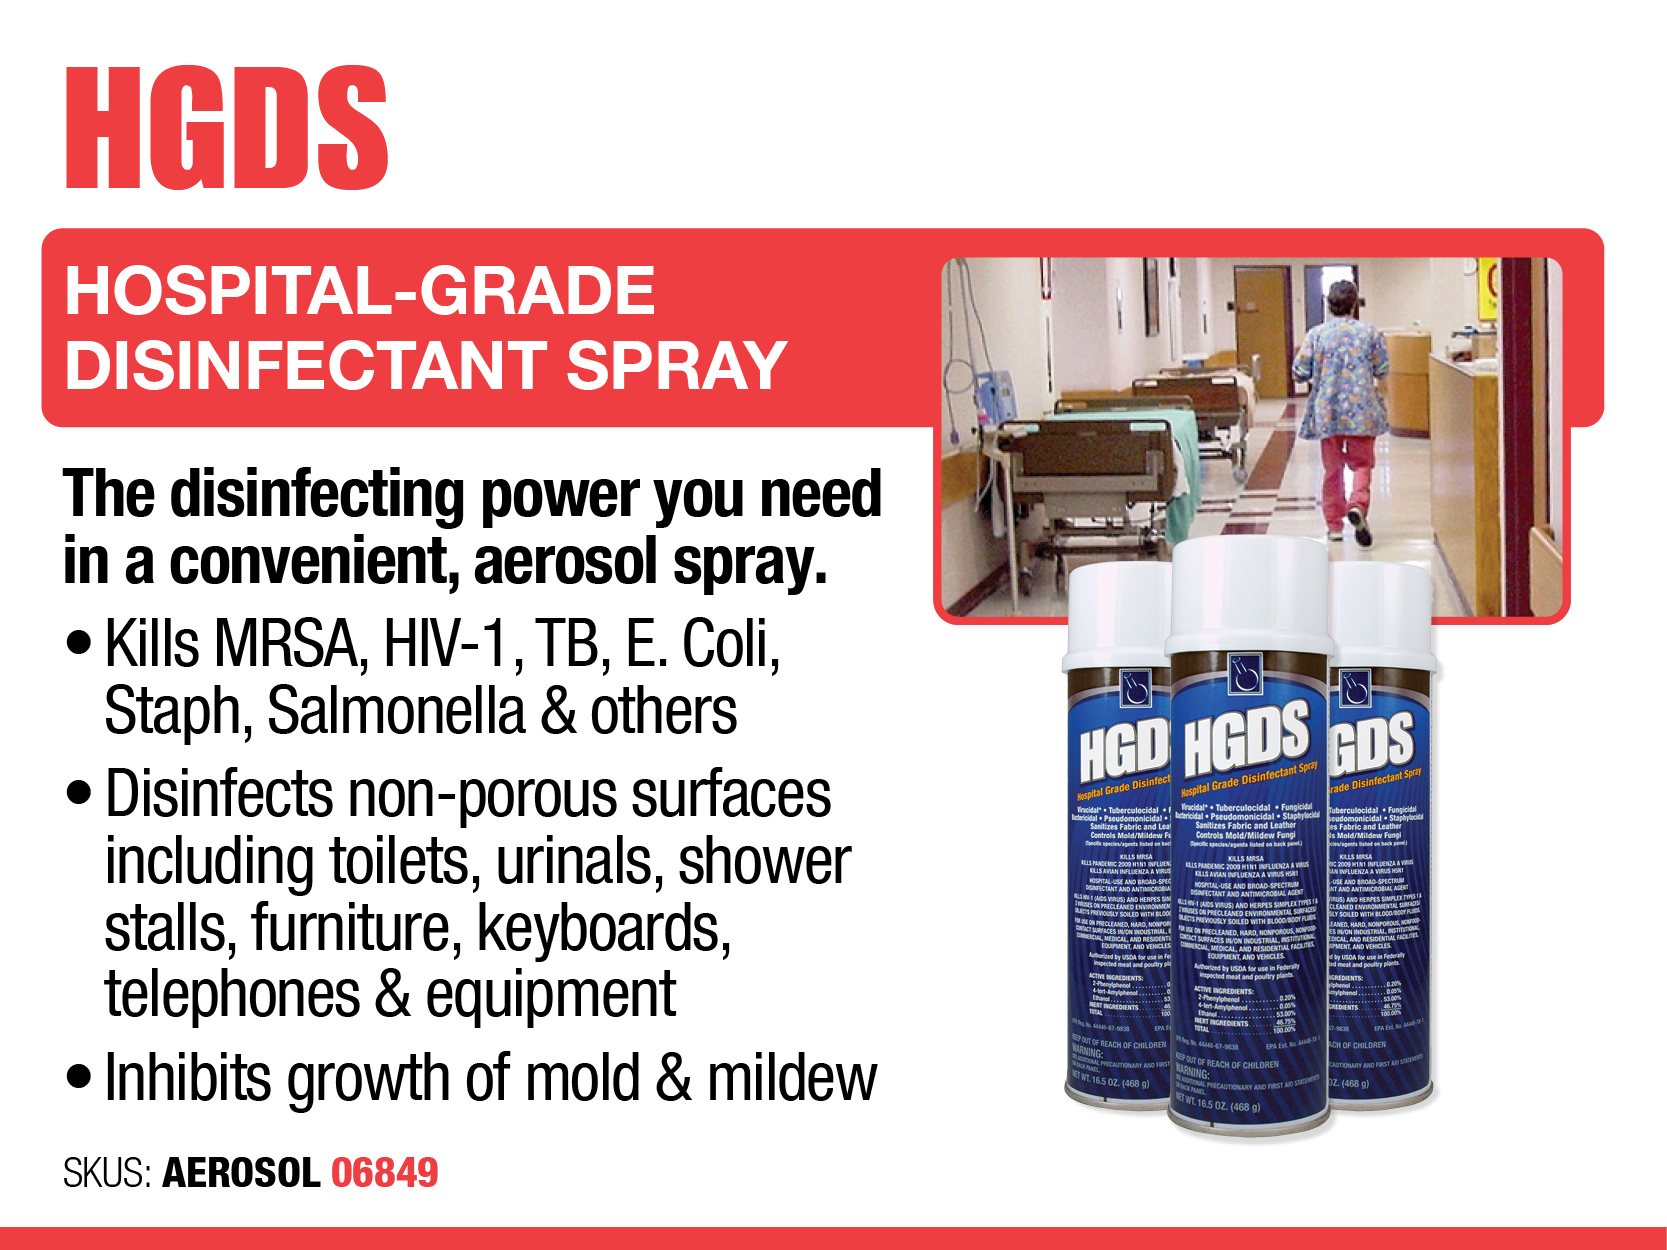 HGDS - Aerosol Spray - Cold and Flu Prevention - Deodorize, Disinfect, Kill COVID-19